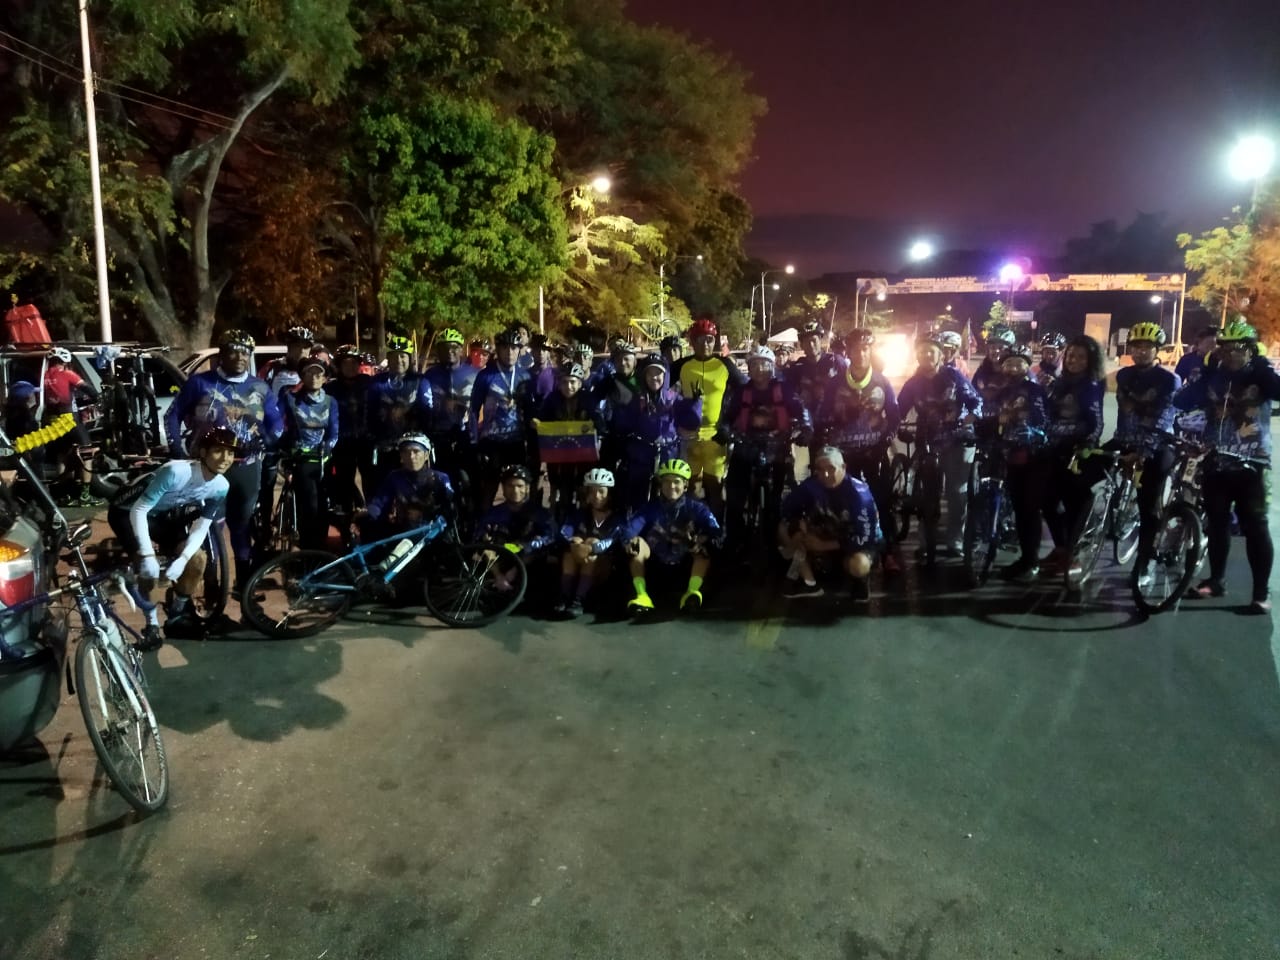 Arrancó peregrinación ciclística “Kilómetros de Fe” rumbo al Nazareno de Achaguas (VIDEOS)